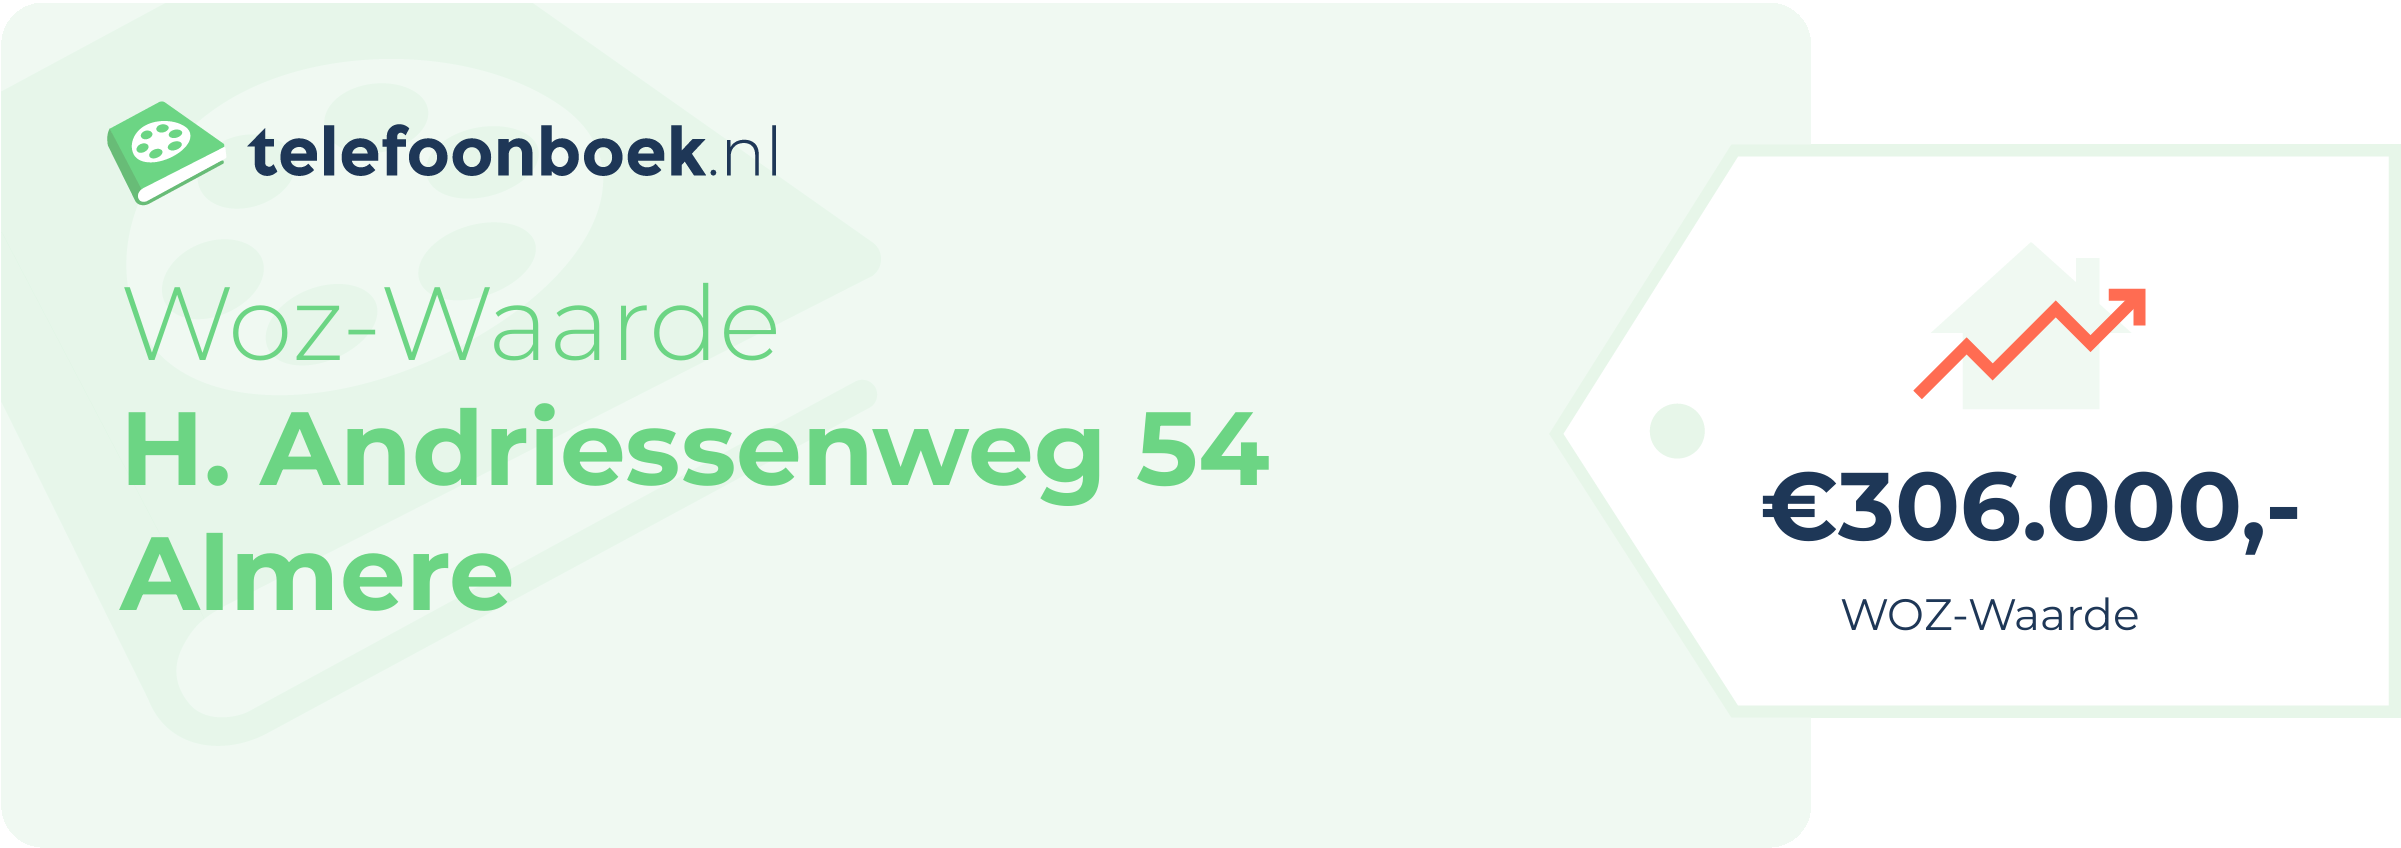 WOZ-waarde H. Andriessenweg 54 Almere